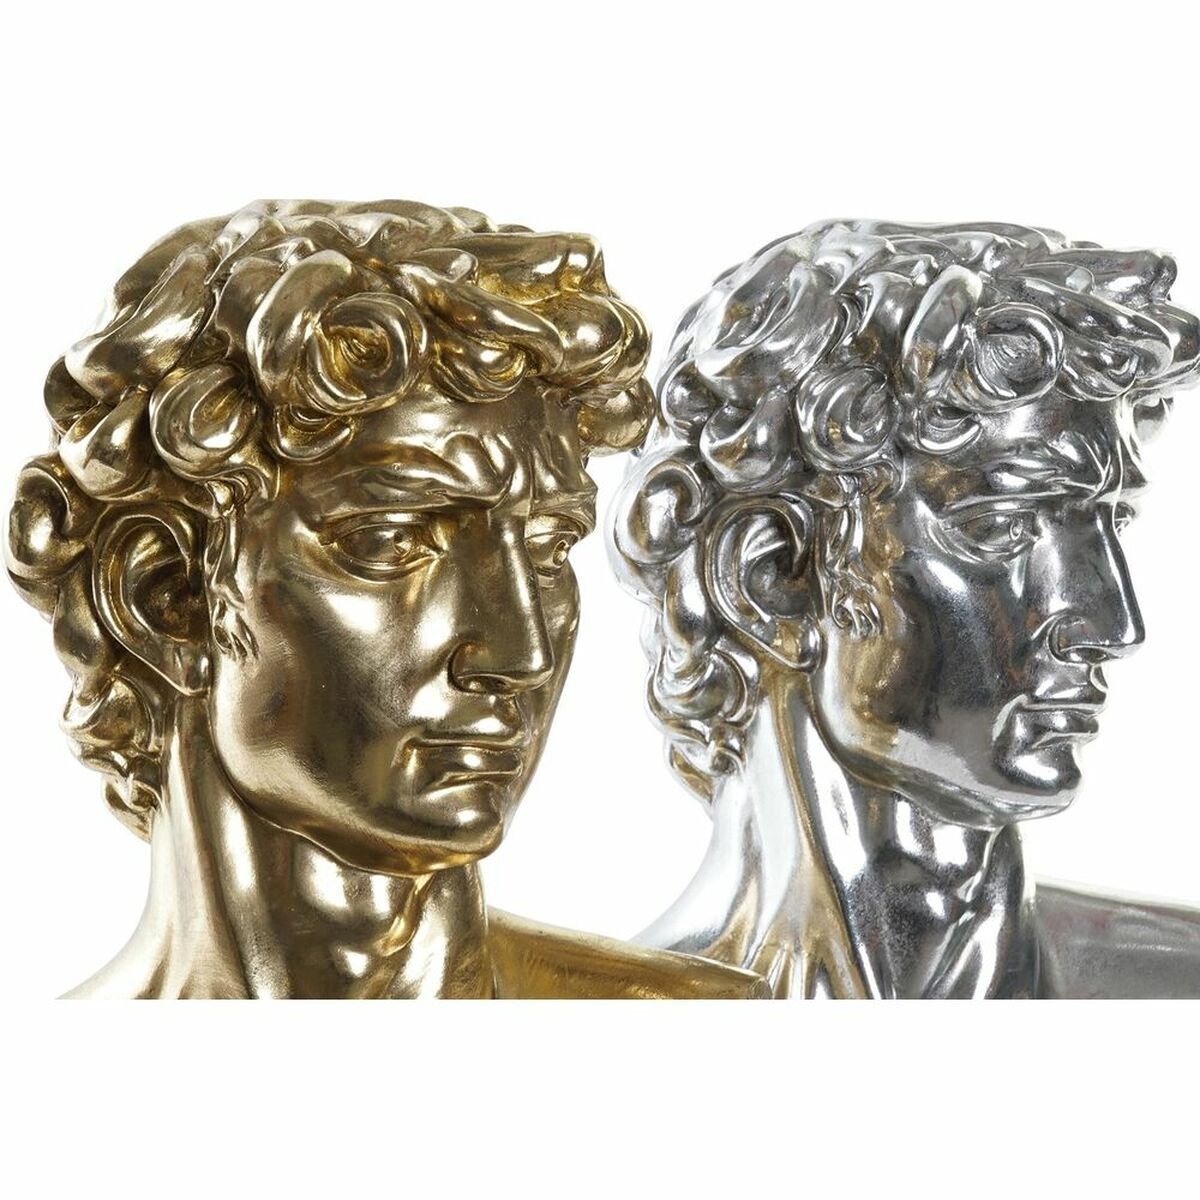 David zilver en goud 24,5 x 17,5 x 36 cm